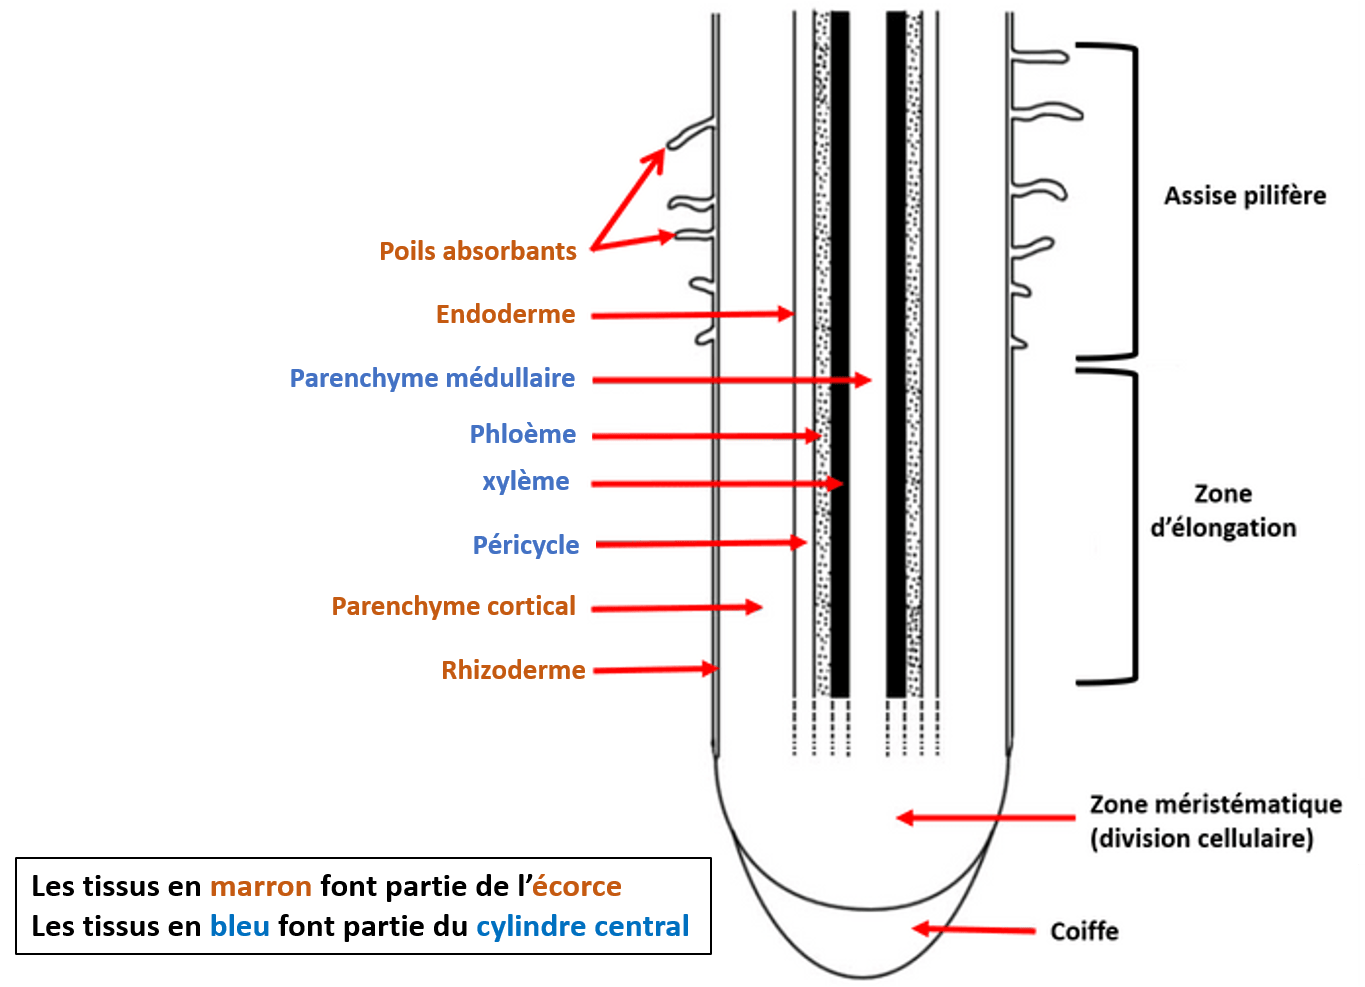 Une coupe longitudinale de racine montre les différents tissus qui la compose. Deux régions sont visibles, d'abord l'écorce composé de l'endoderme, du parenchyme cortical et du rhizoderme. Ensuite le cylindre central composé du parenchyme médullaire, des tissus conducteurs et du péricycle.